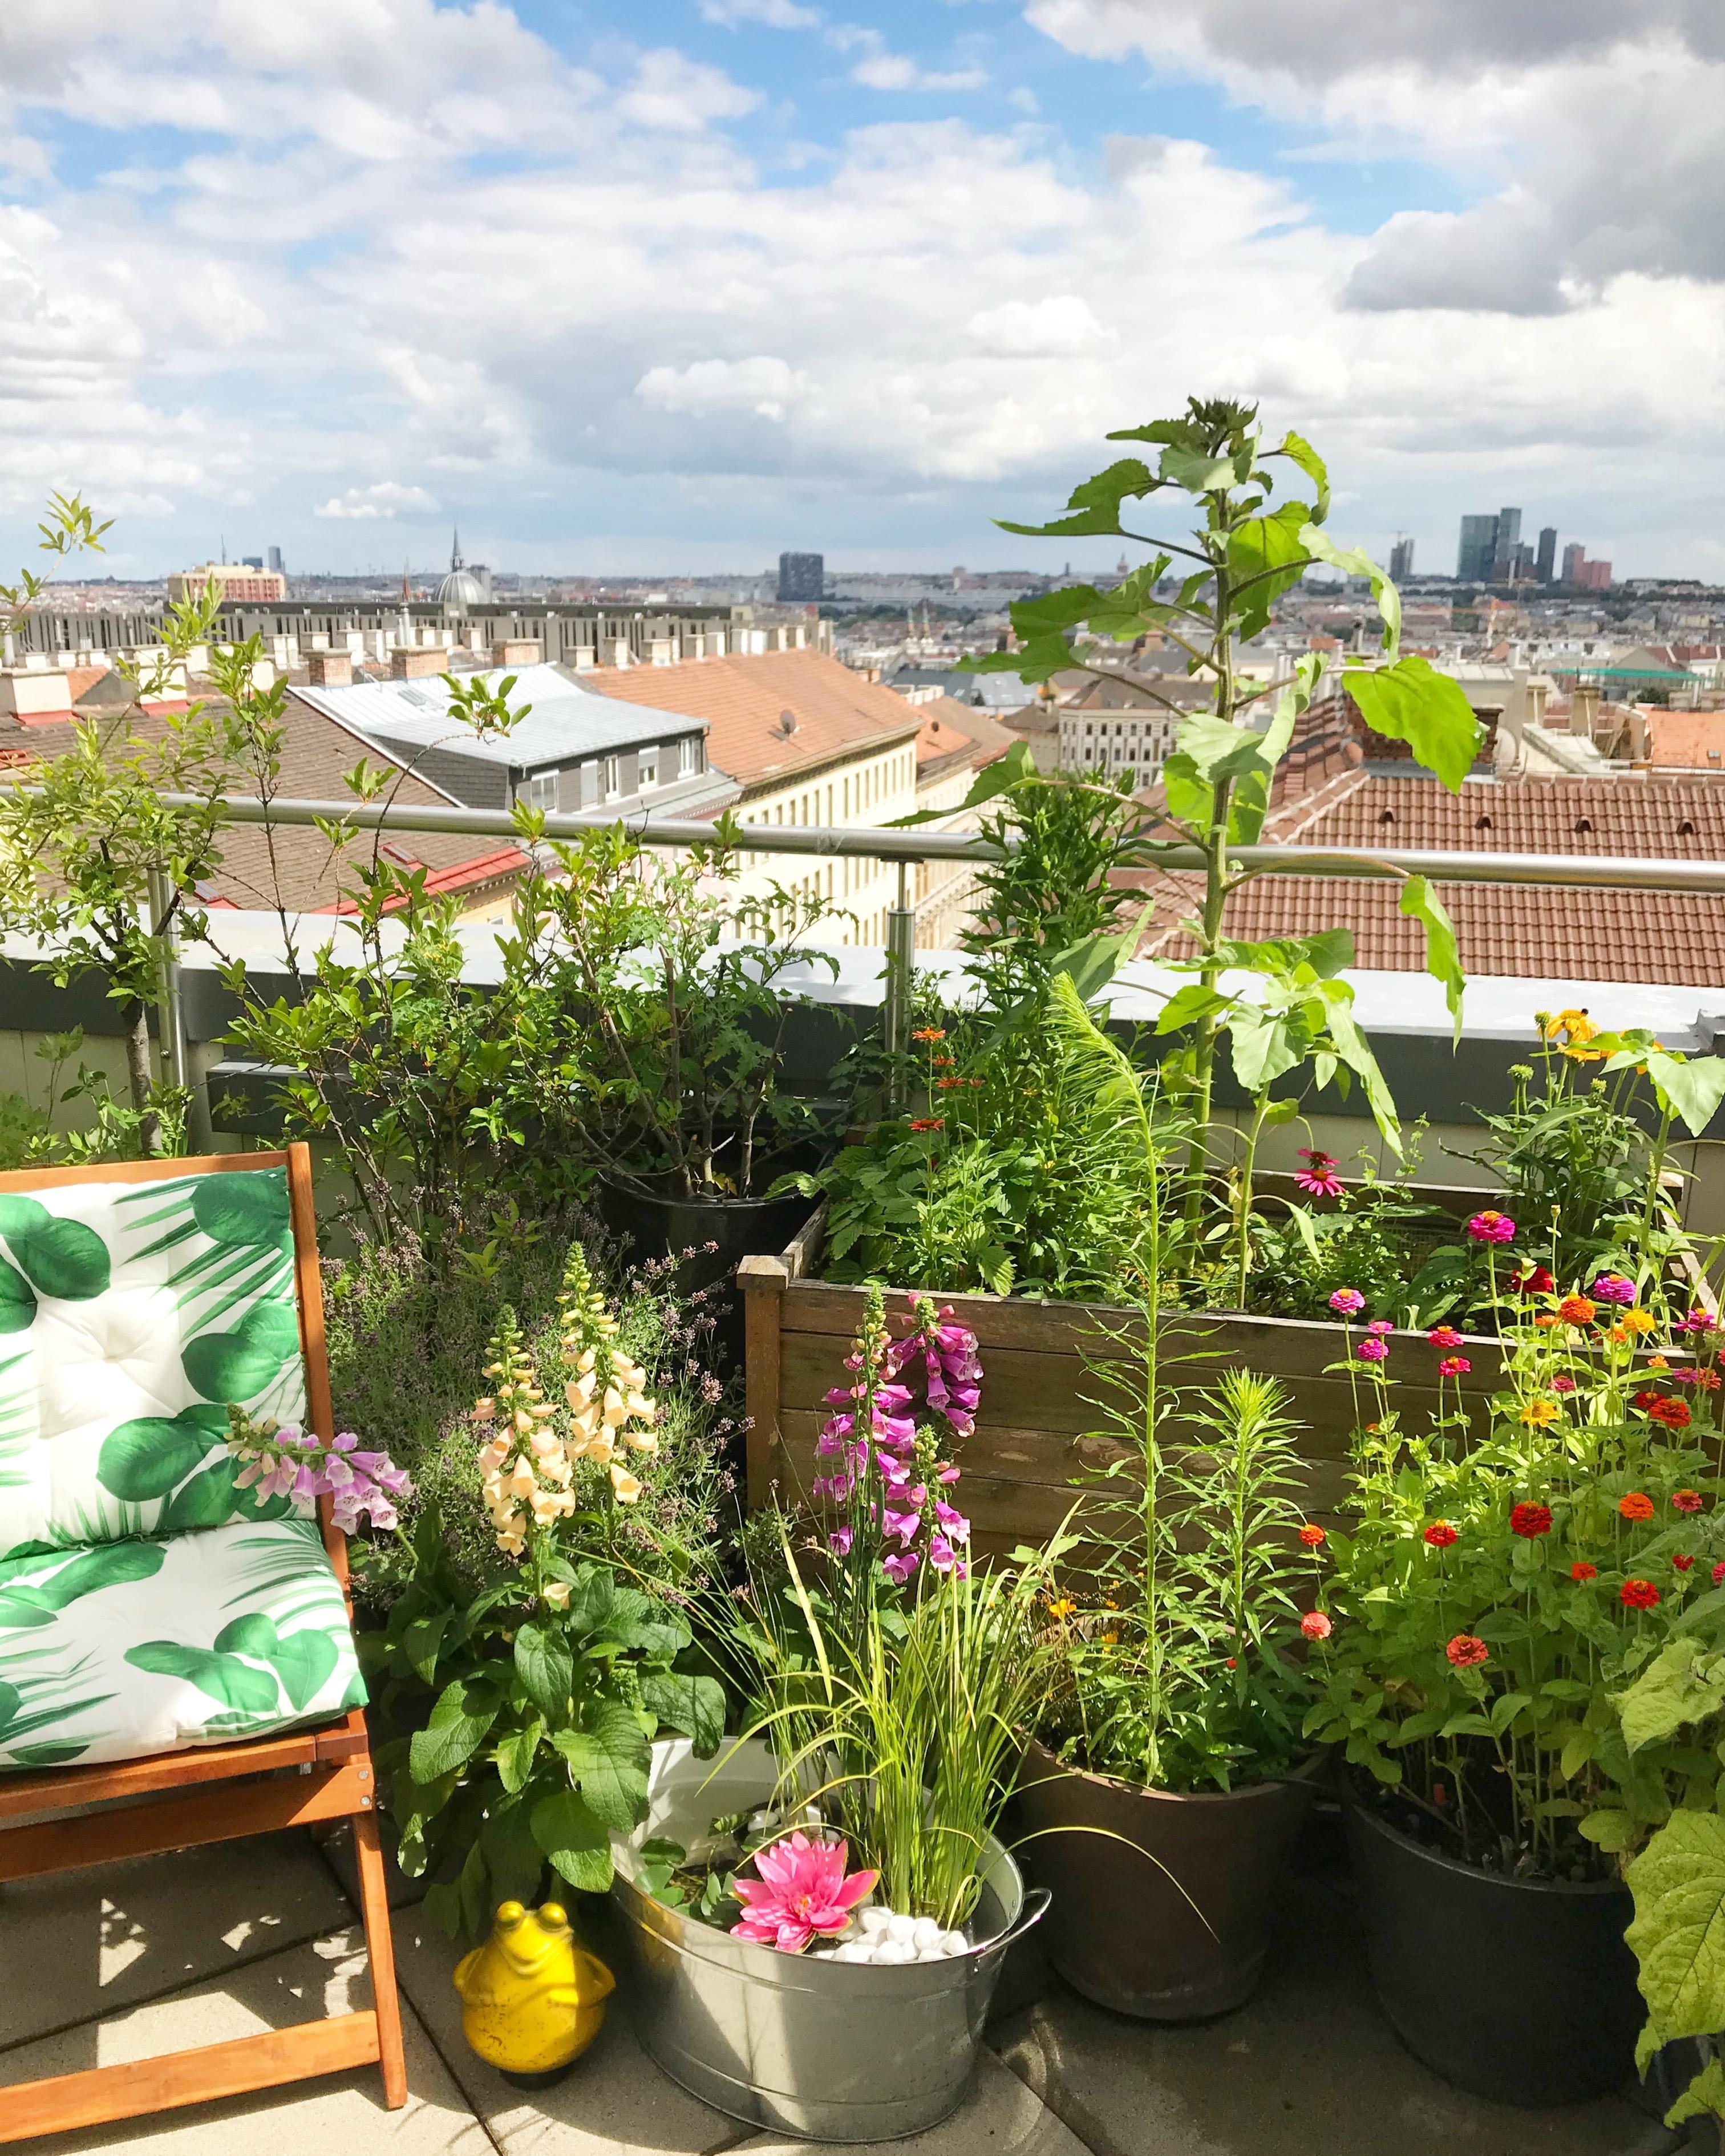 Inspiriert vom aktuellen Couch-Magazin 😃
#diy #miniteich #terrasse #sommerliebe #oase #wien #rooftop  #balkon #urban